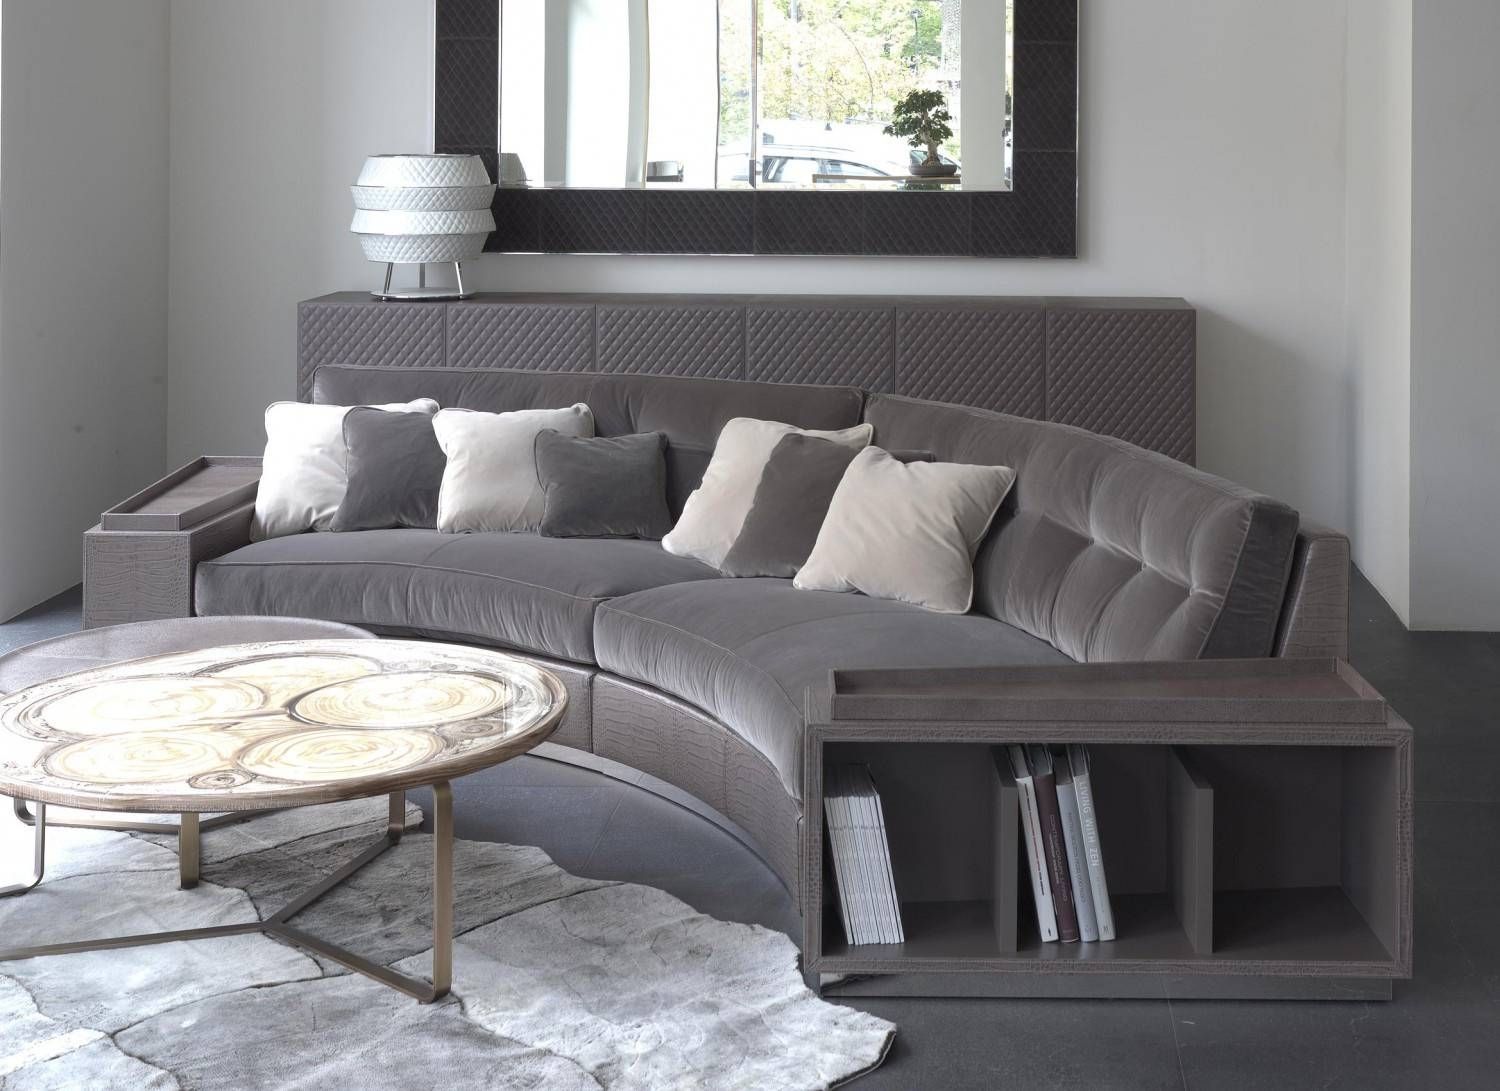 Semicircular Sofa – Leather Sectional Sofa For Semicircular Sofa (View 10 of 30)